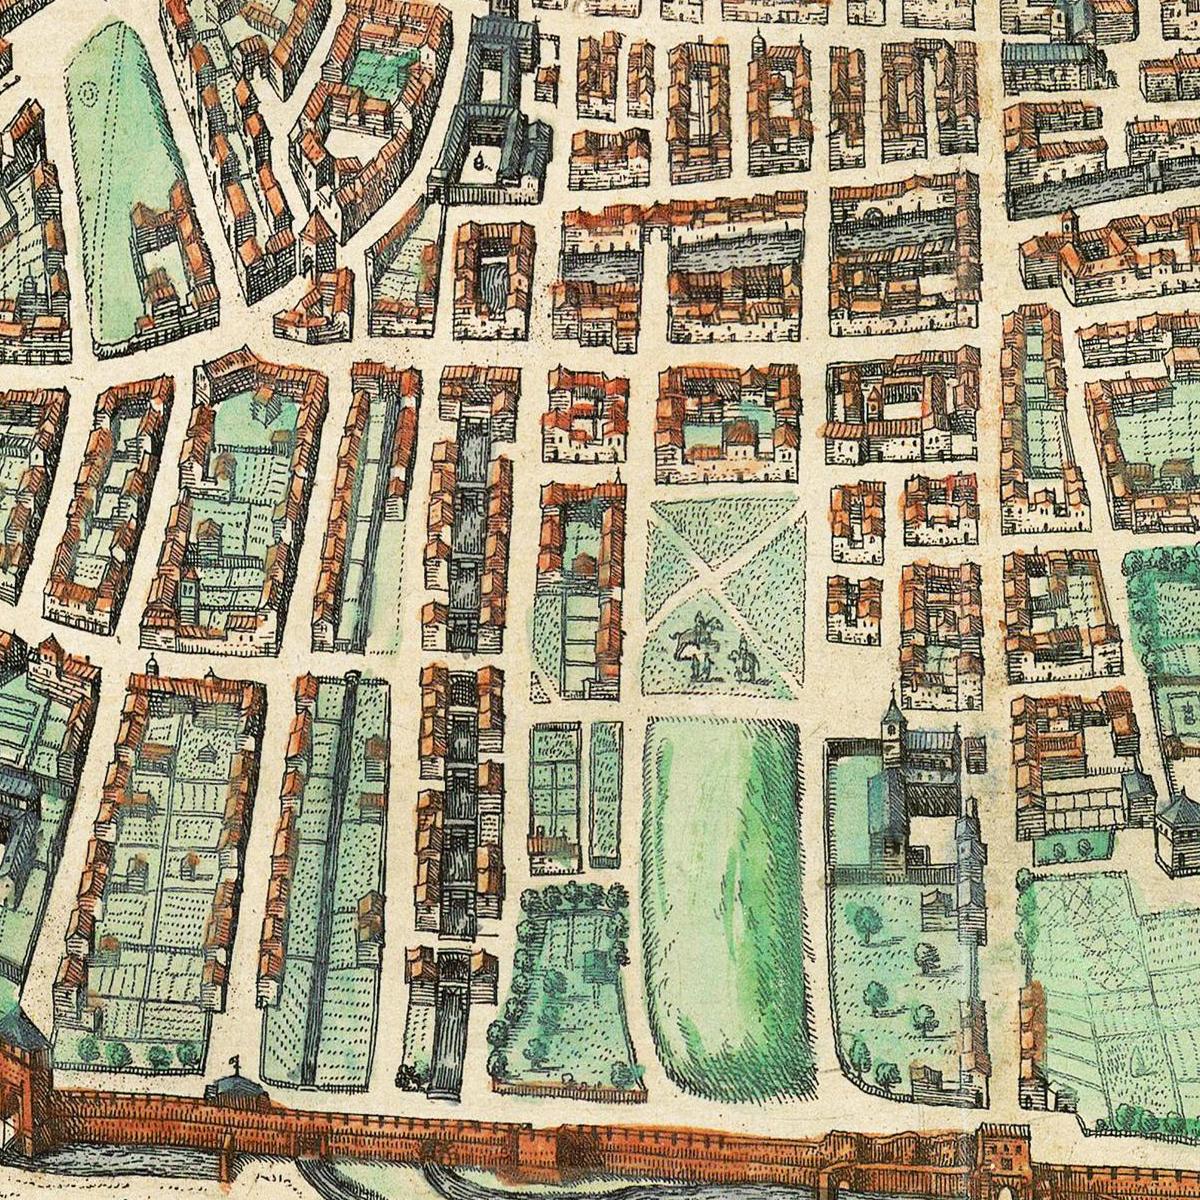 Historische Stadtansicht Bologna um 1609